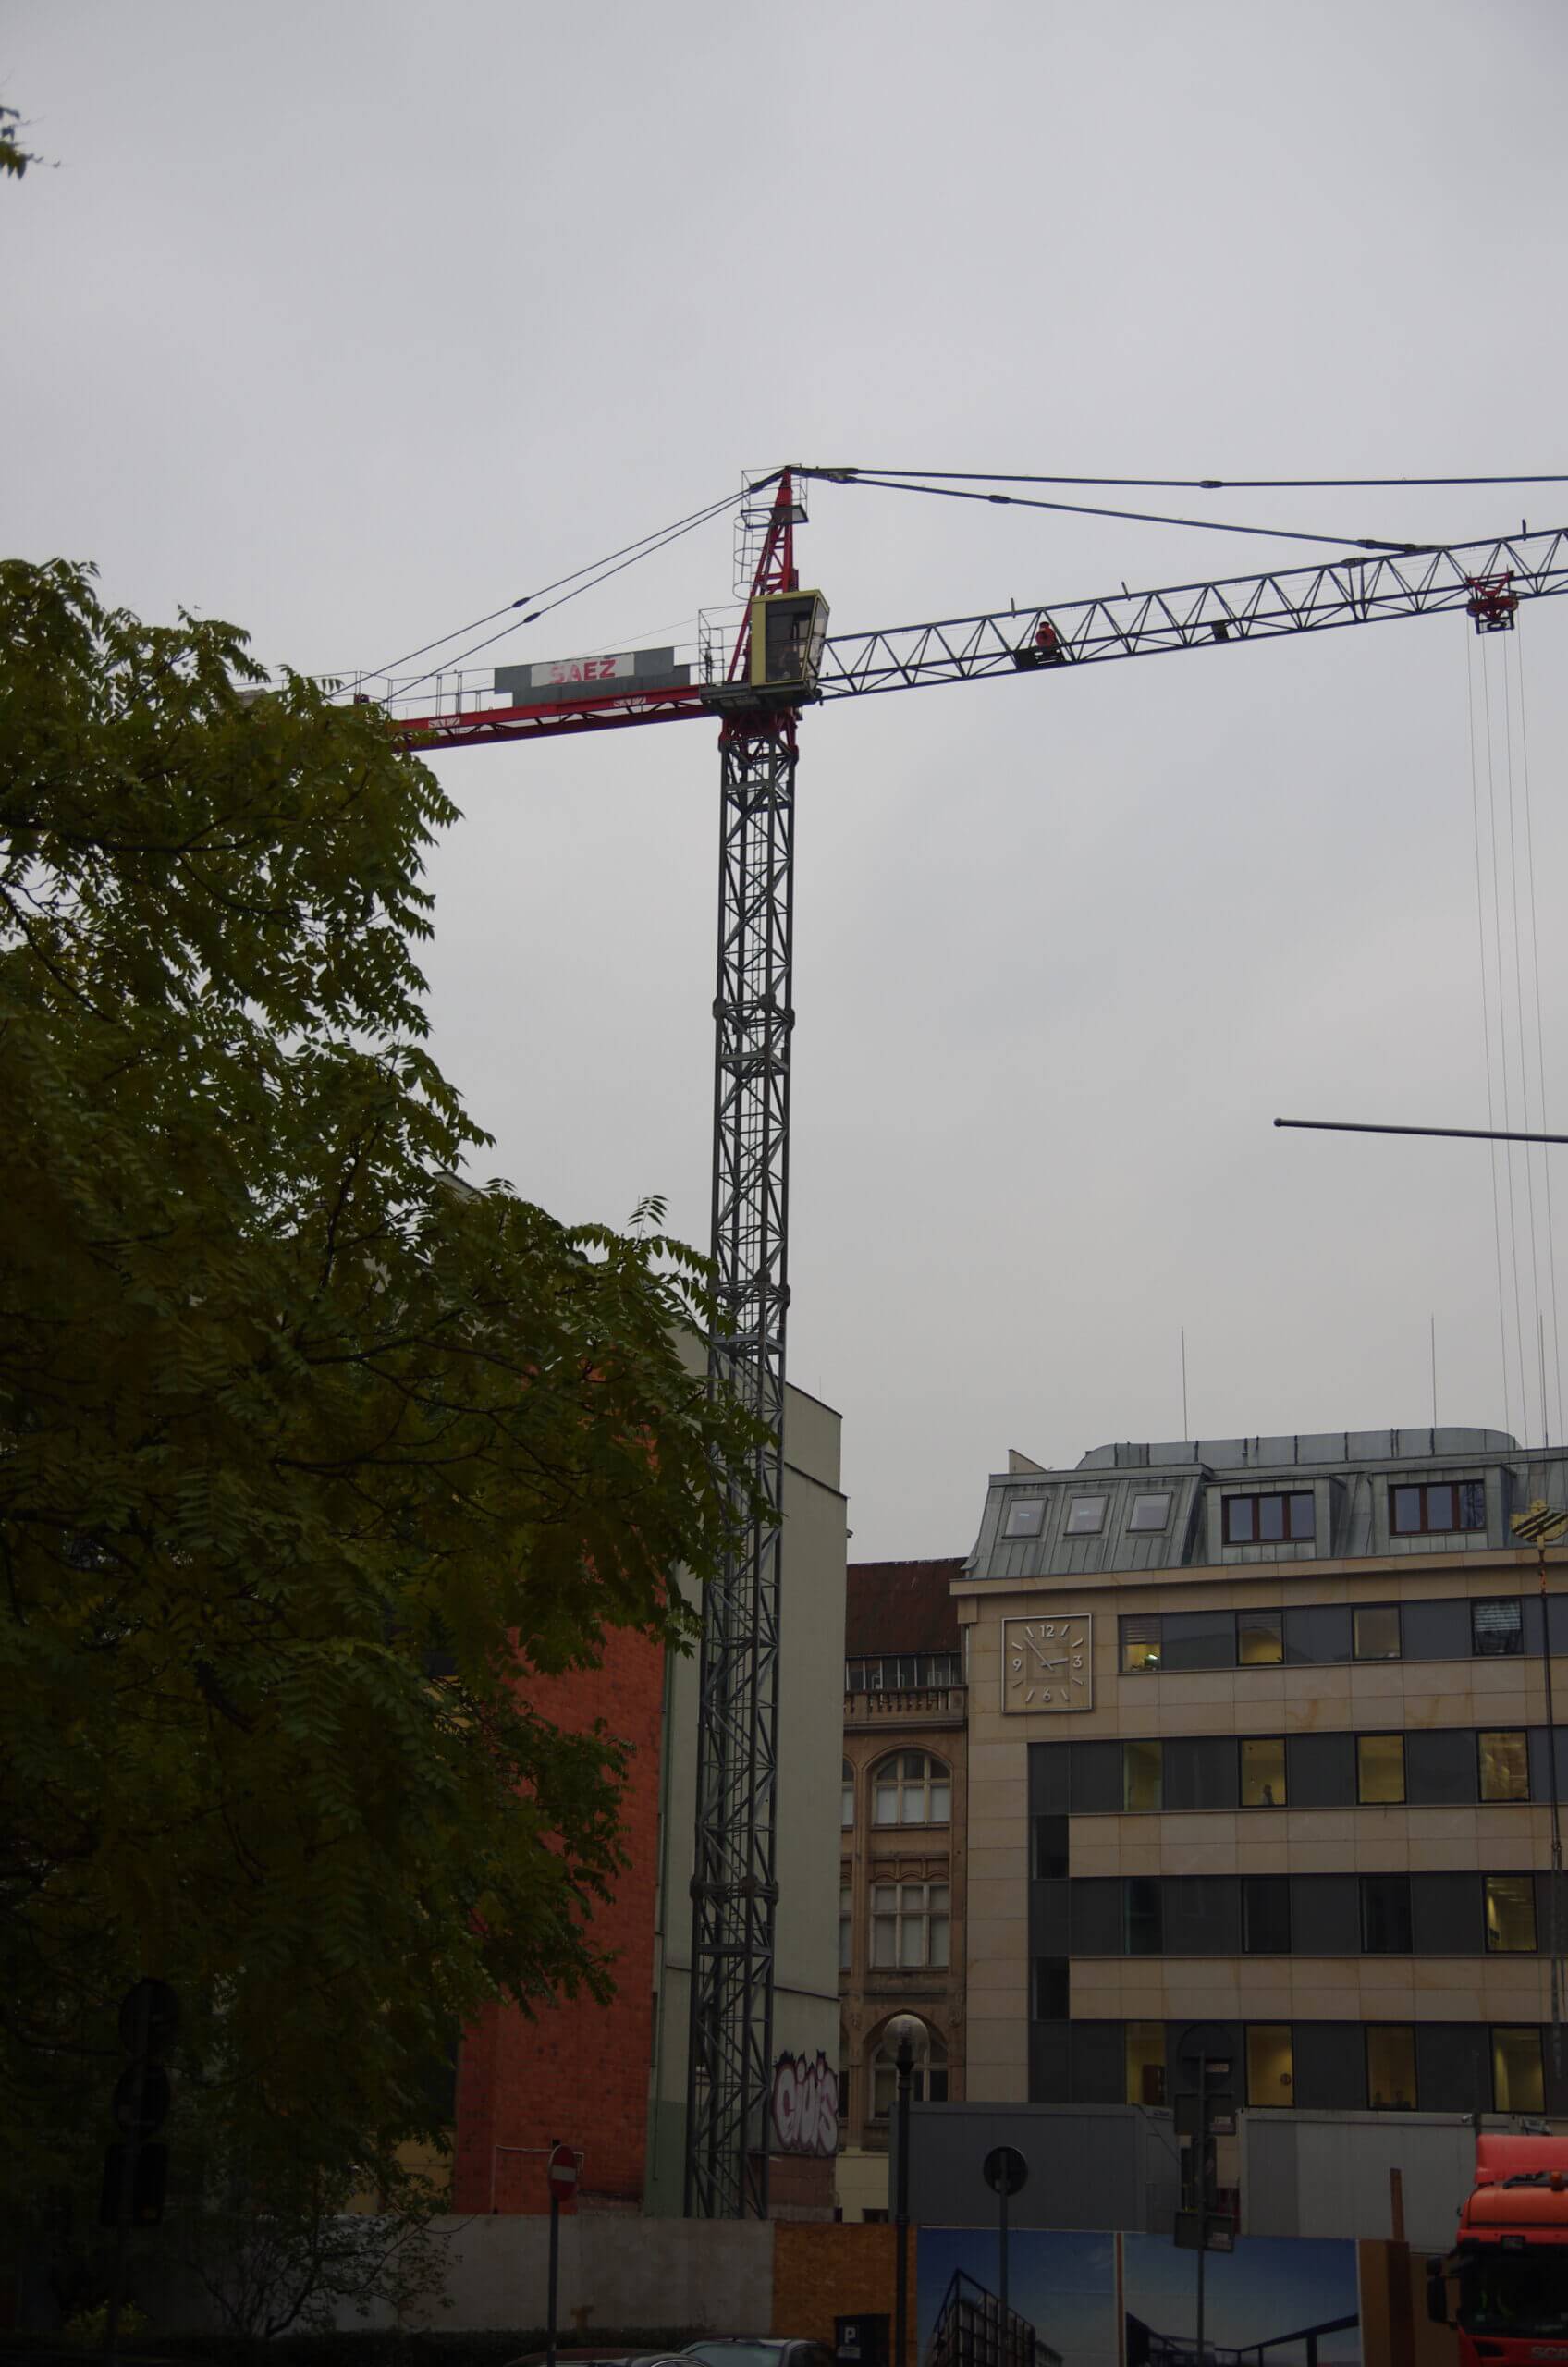 Budowa I2 Development, KPB, ul. Oławska, 2015-2016